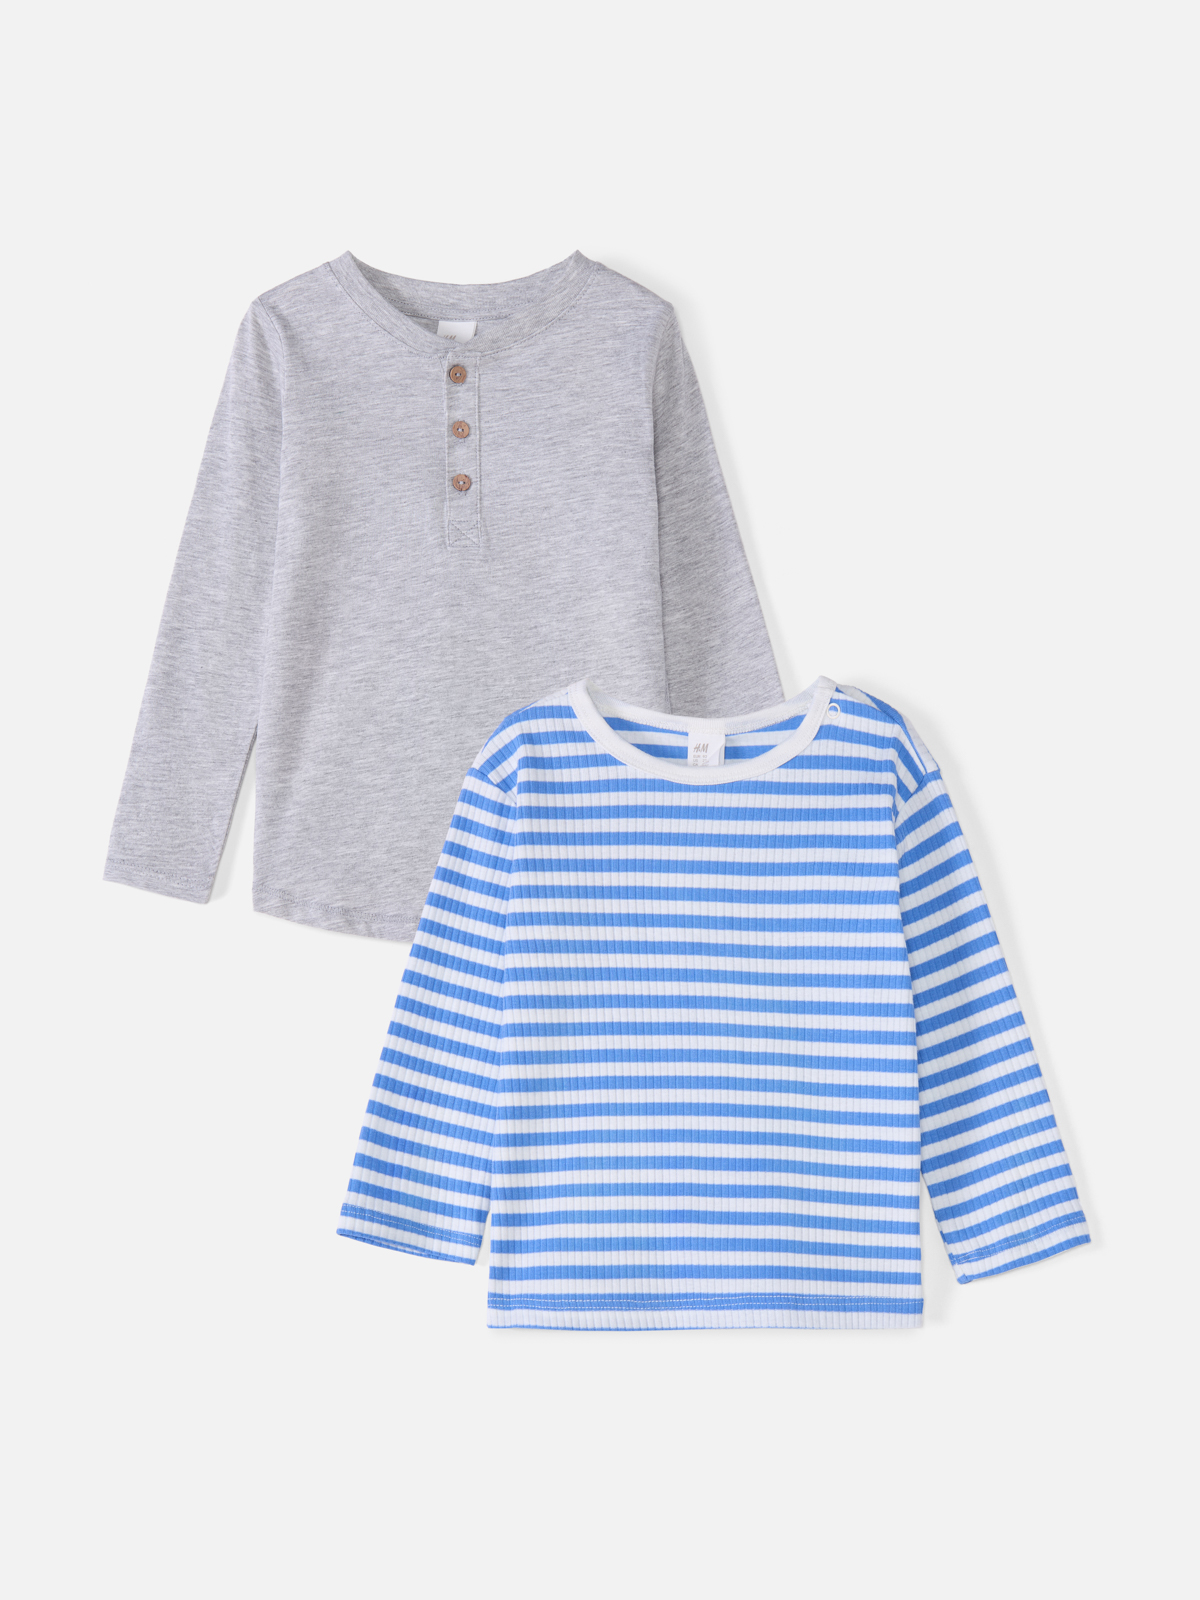 Комплект джемперов H&M для малышей, голубой, серый-019, размер 86, 767181019, 2 шт.